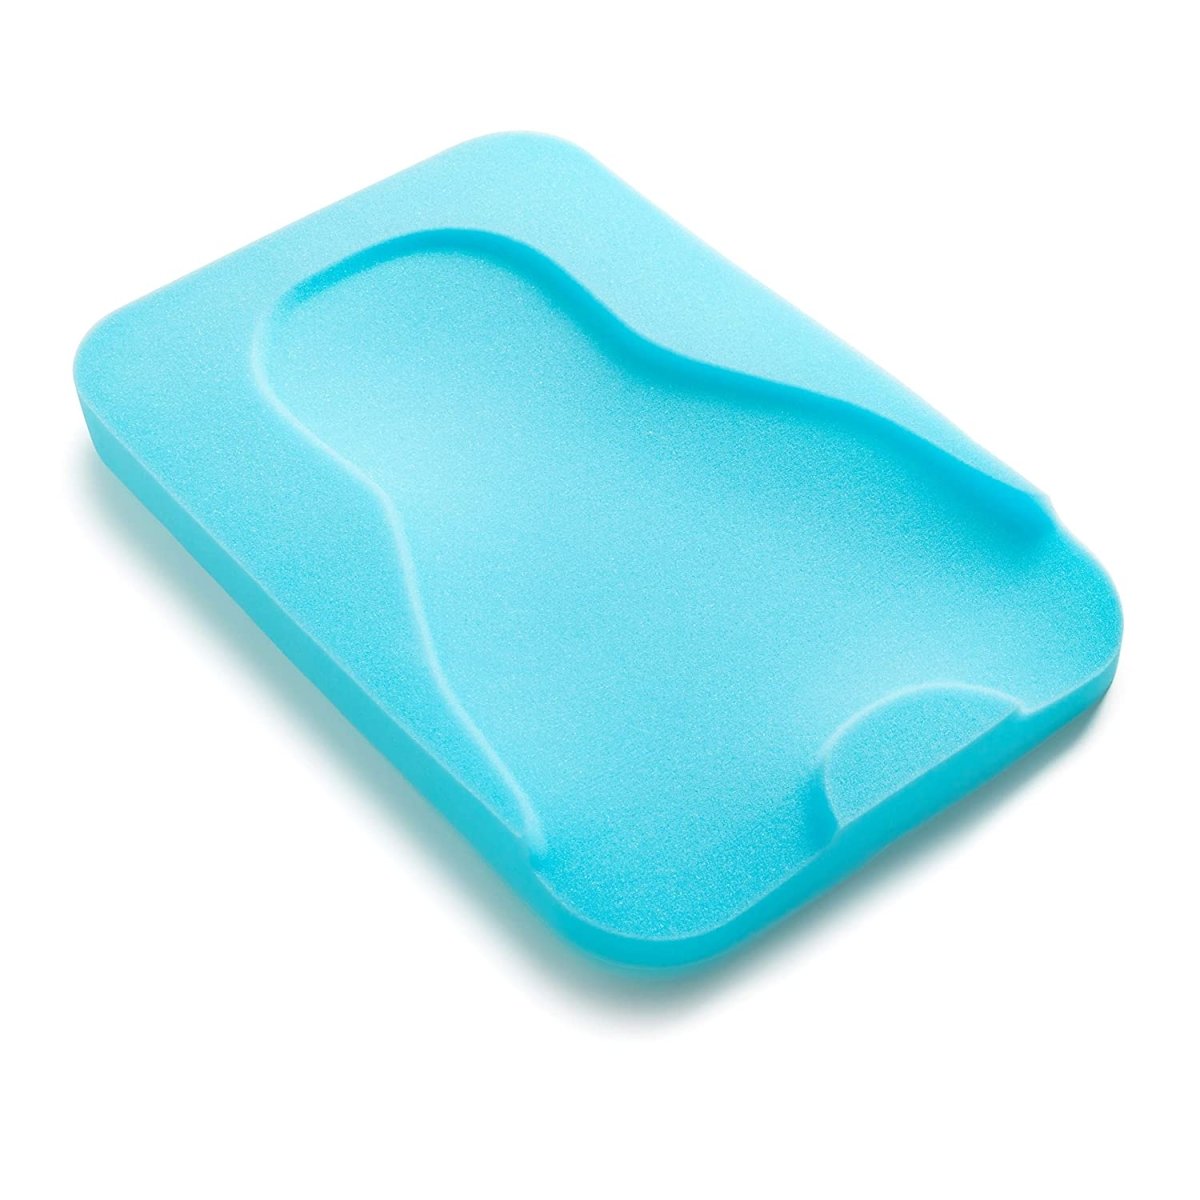 Summer Infant Comfy Bath Sponge - Aqua - 09610D